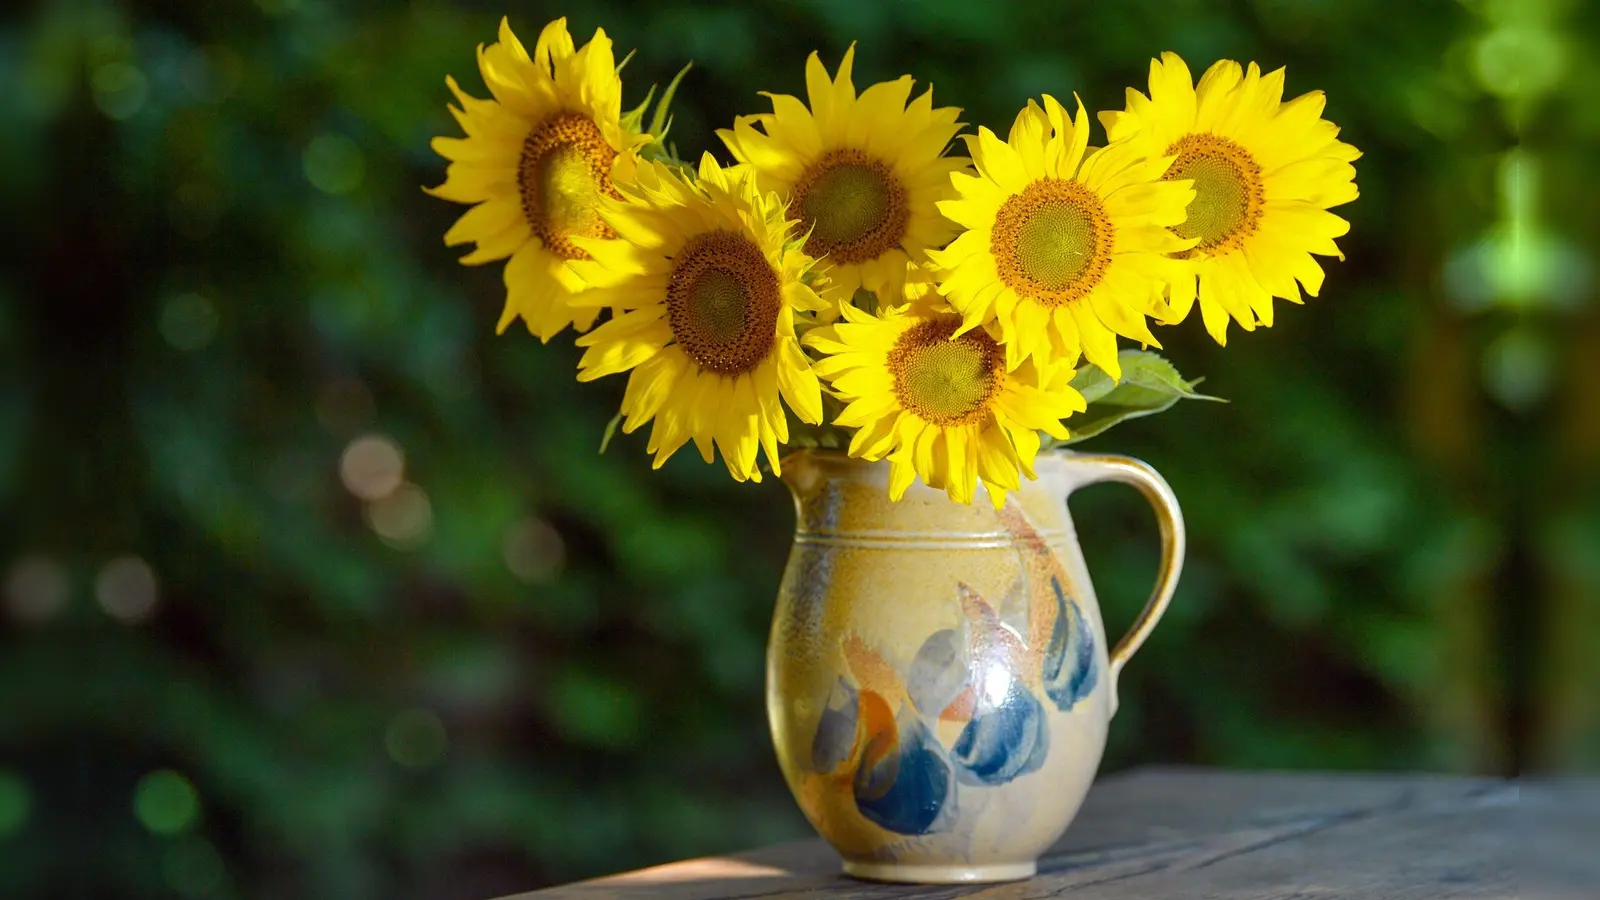 Werden die Stiele der Sonnenblumen nach dem Schnitt kurz in heißes Wasser getaucht, schließen sich die Schnittstellen schneller – und die Blumen halten länger. (Foto: Patrick Pleul/dpa/dpa-tmn)